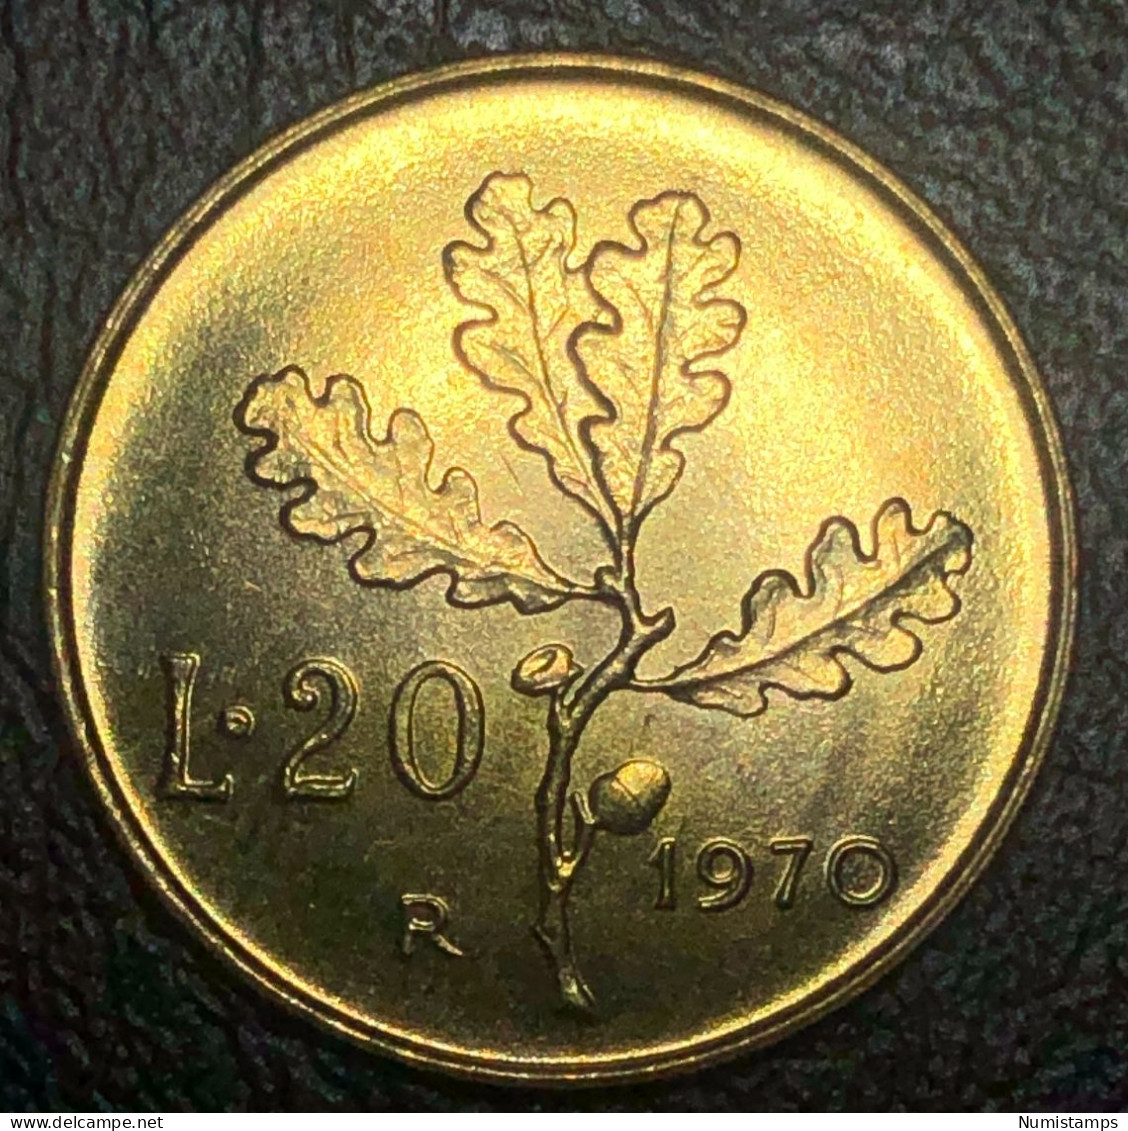 Italia 20 Lire, 1970 Marchio Di Zecca "R" (FDC) - 20 Liras